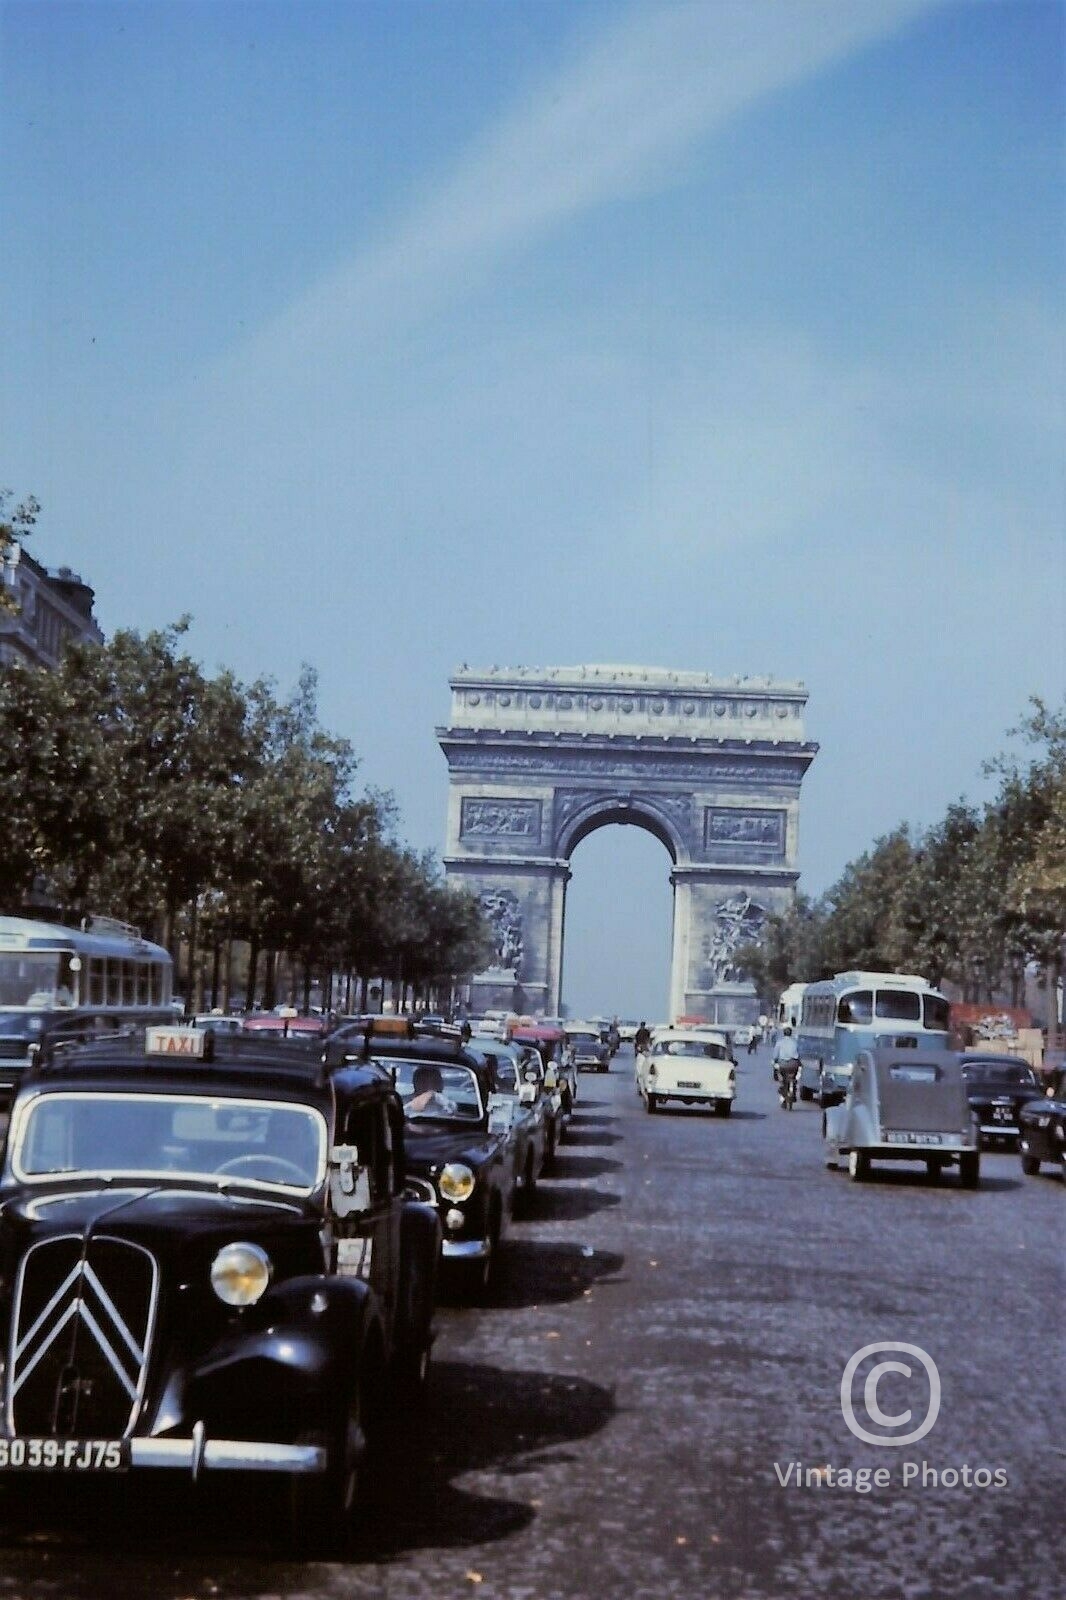 1950s Champs Elysees & Etoile, Paris, France